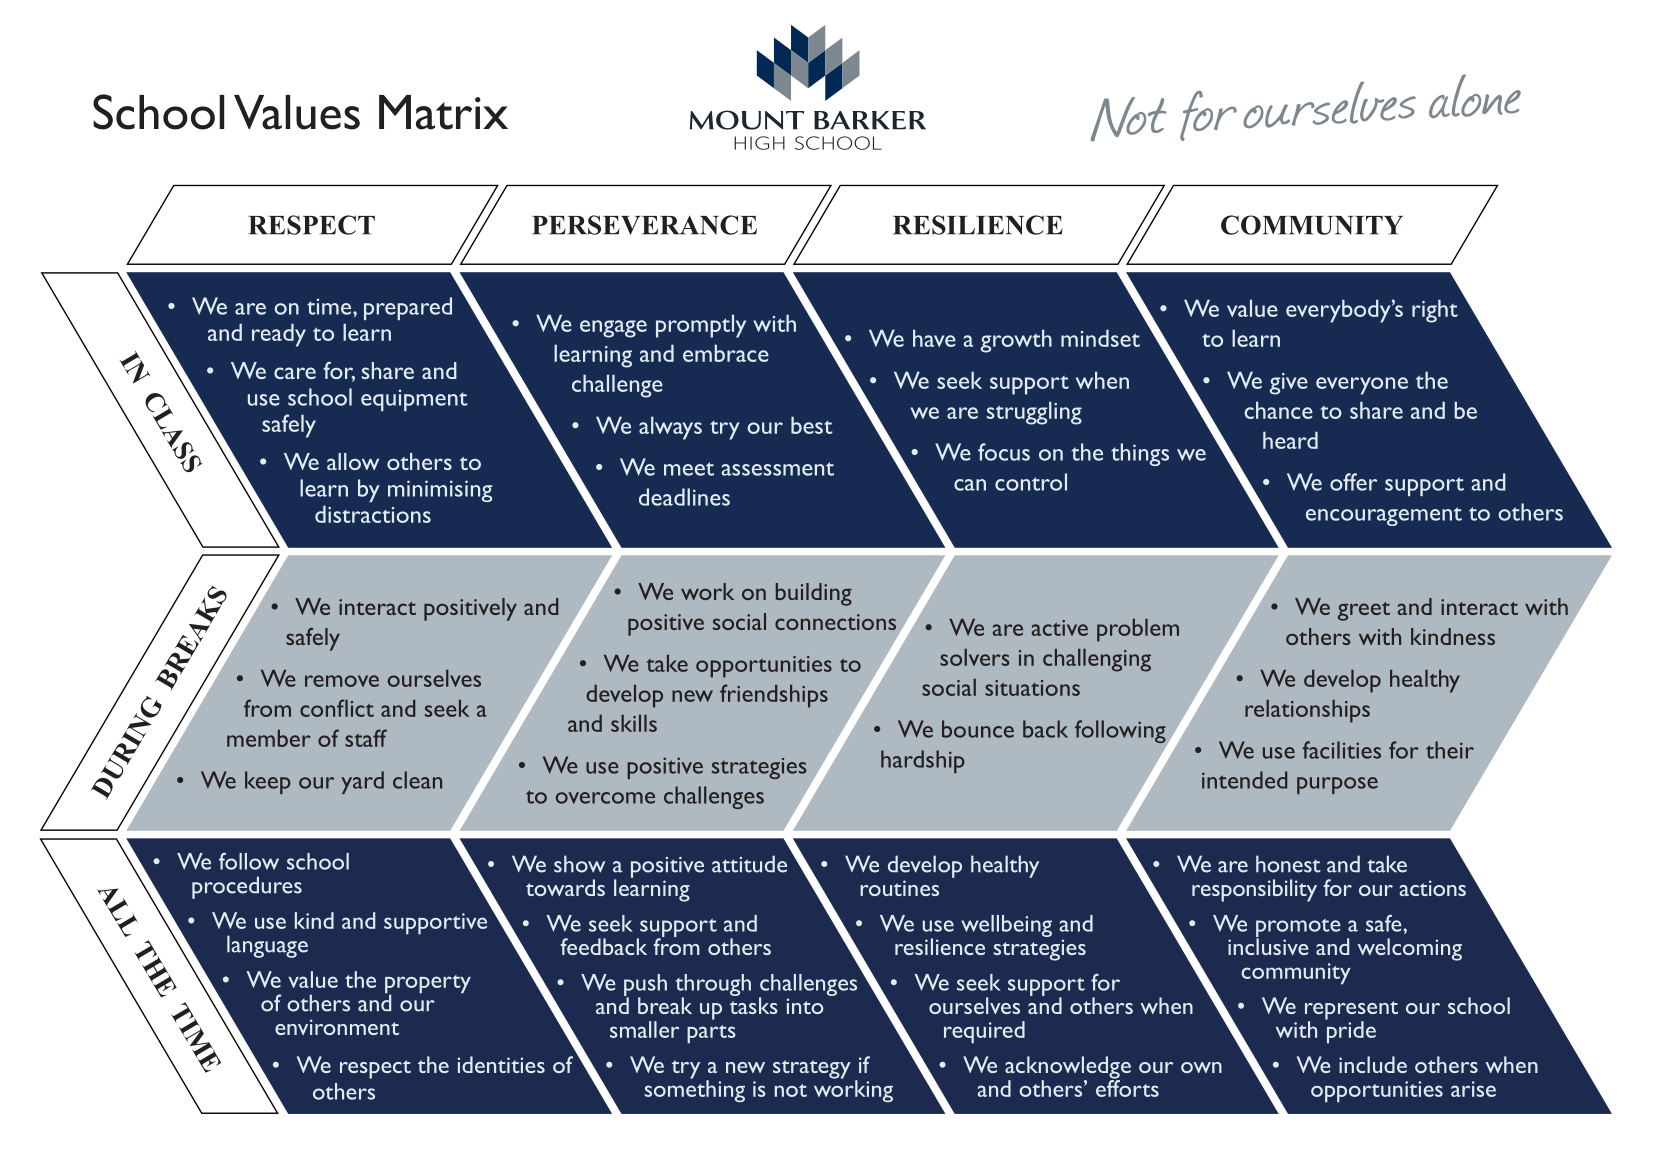 School values matrix